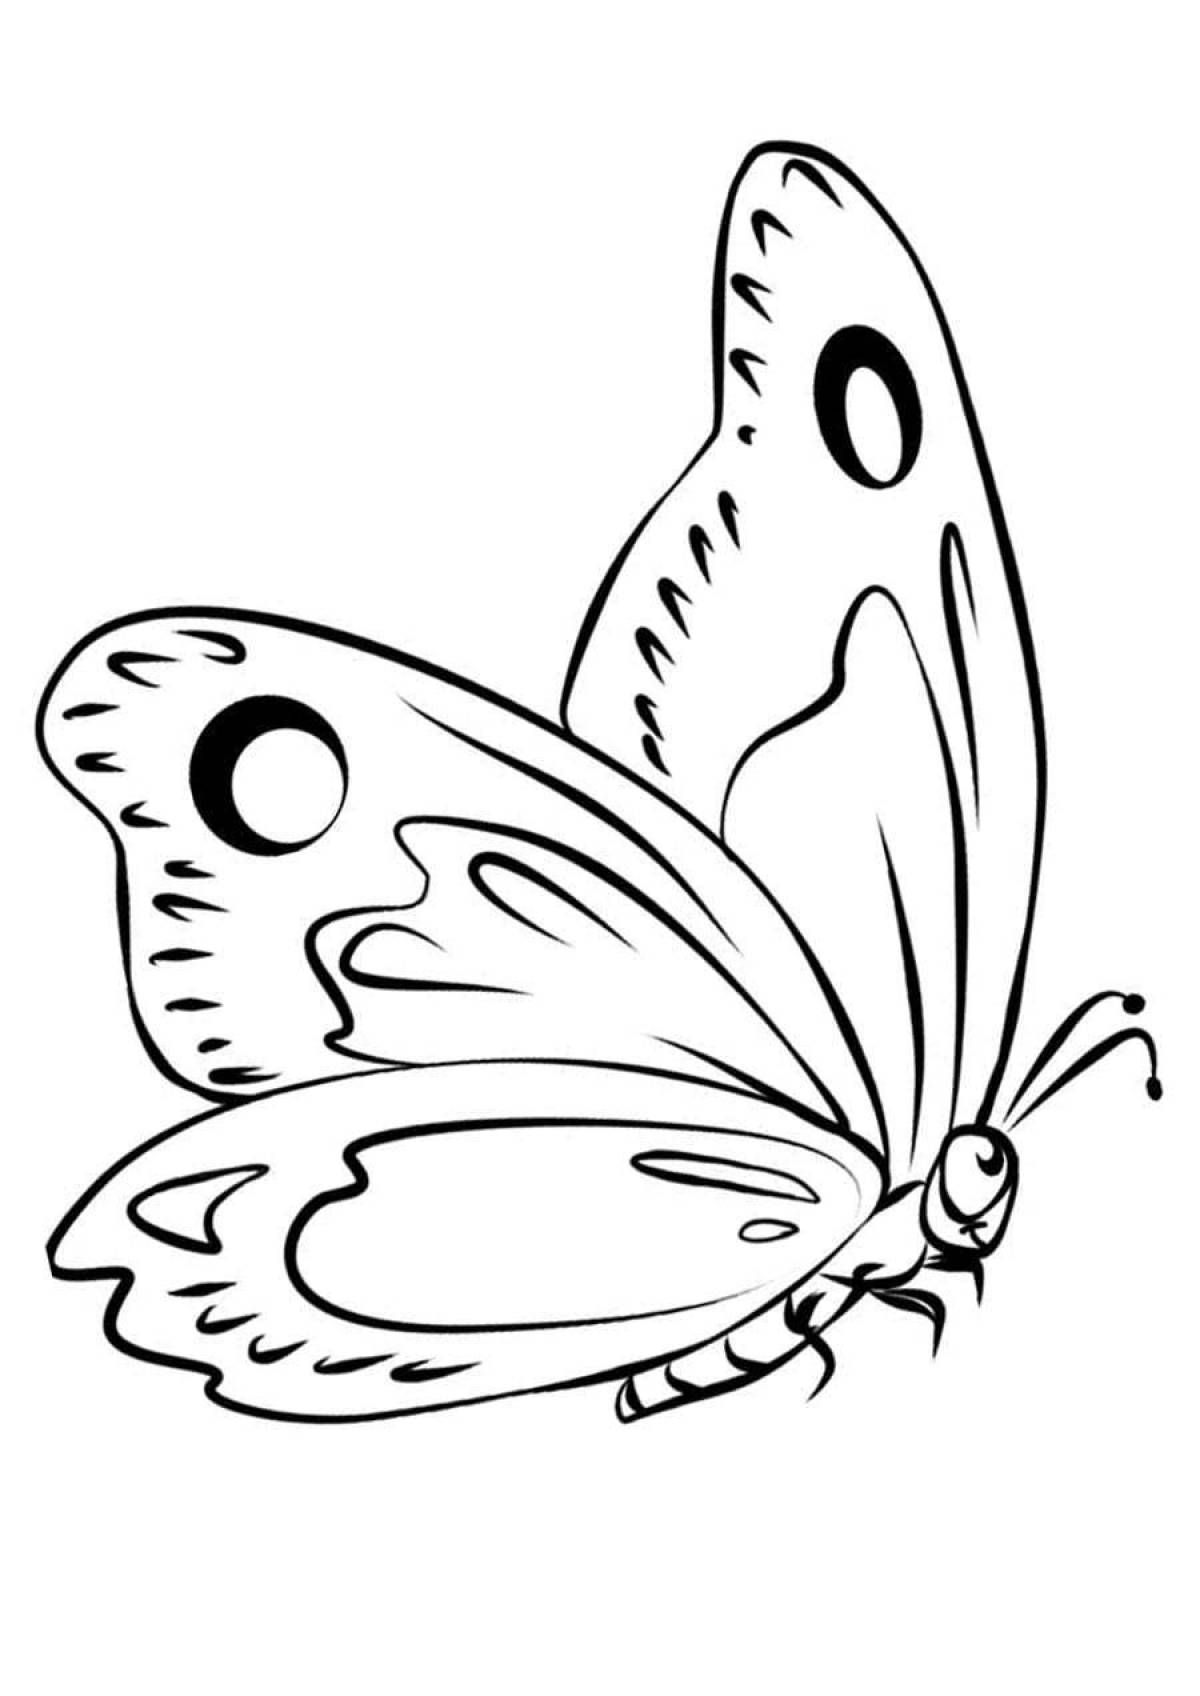 Причудливый рисунок бабочки